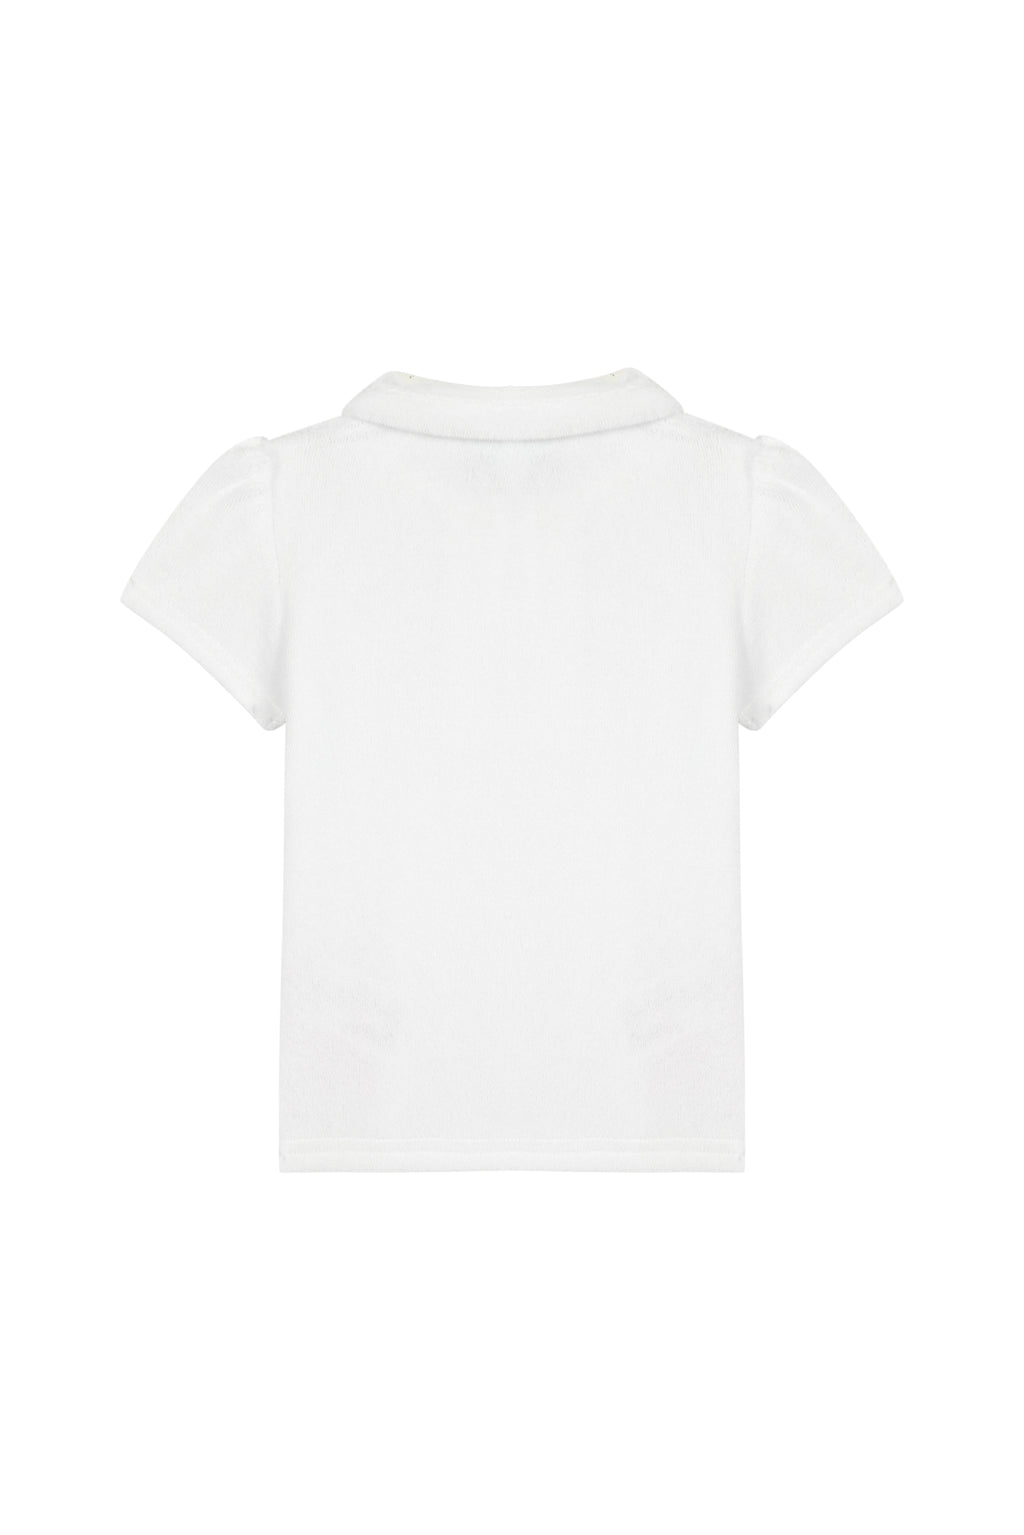 Kleid - weißes Schwamm Poloshirt